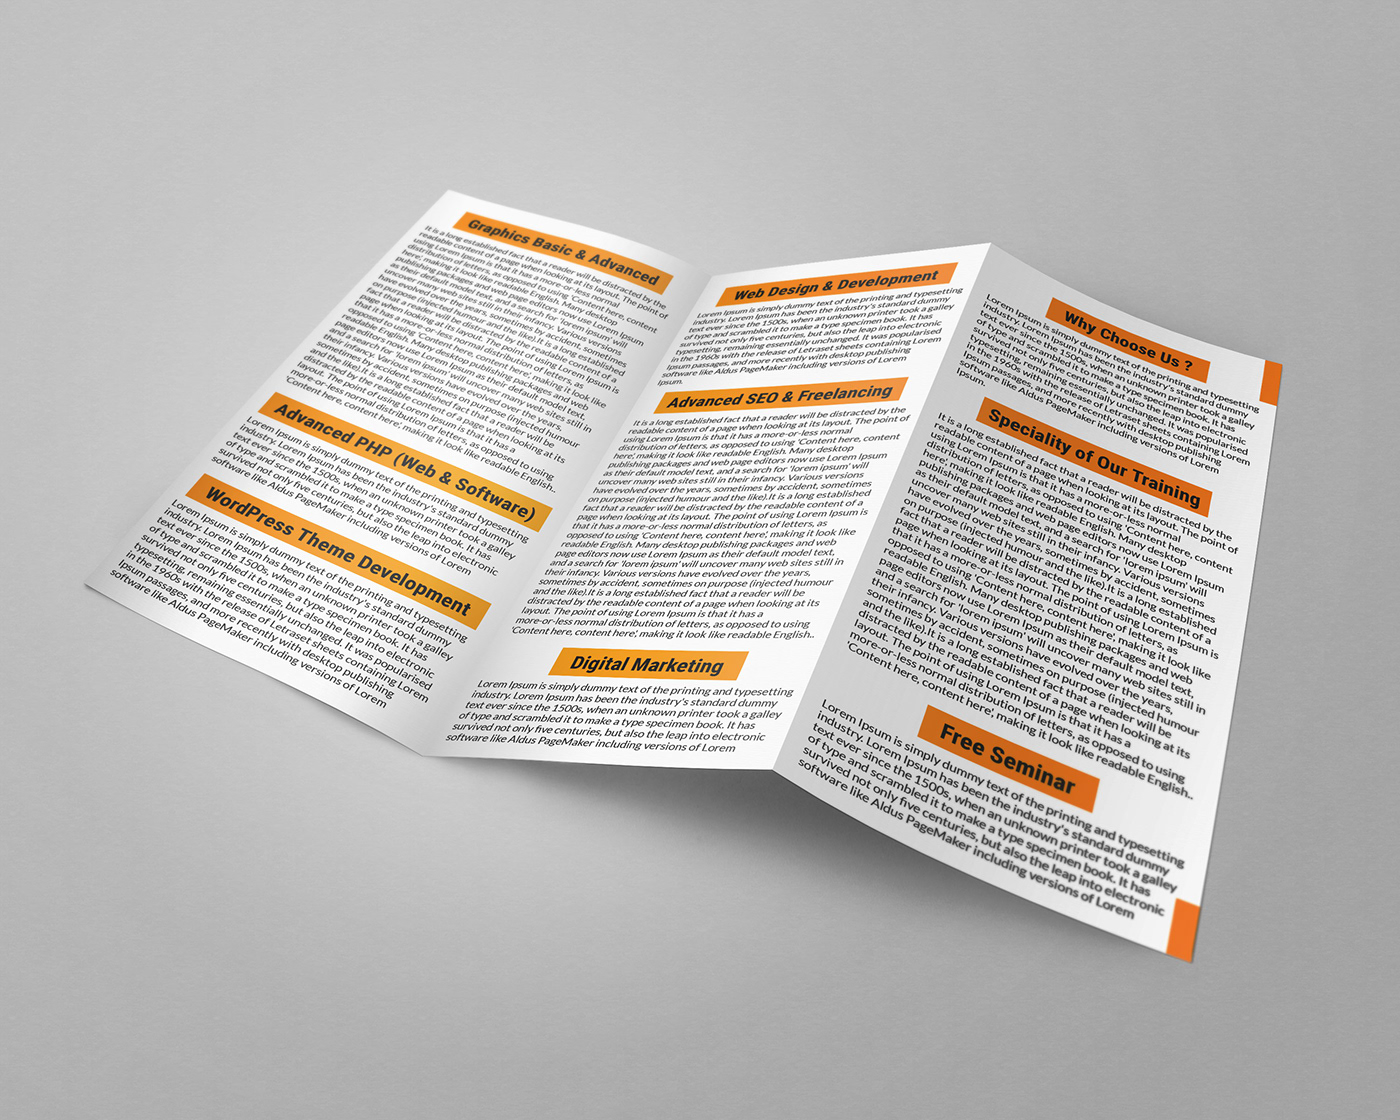 trifold brochure Real steate Flyer realtor flyer Travel Agensi Flyer business flyer #behance #graphicdesign #dribbble #design #branding #logo #illustration #vector #designer #graphic #ui #webdesign #ux #illustrator #logodesigner